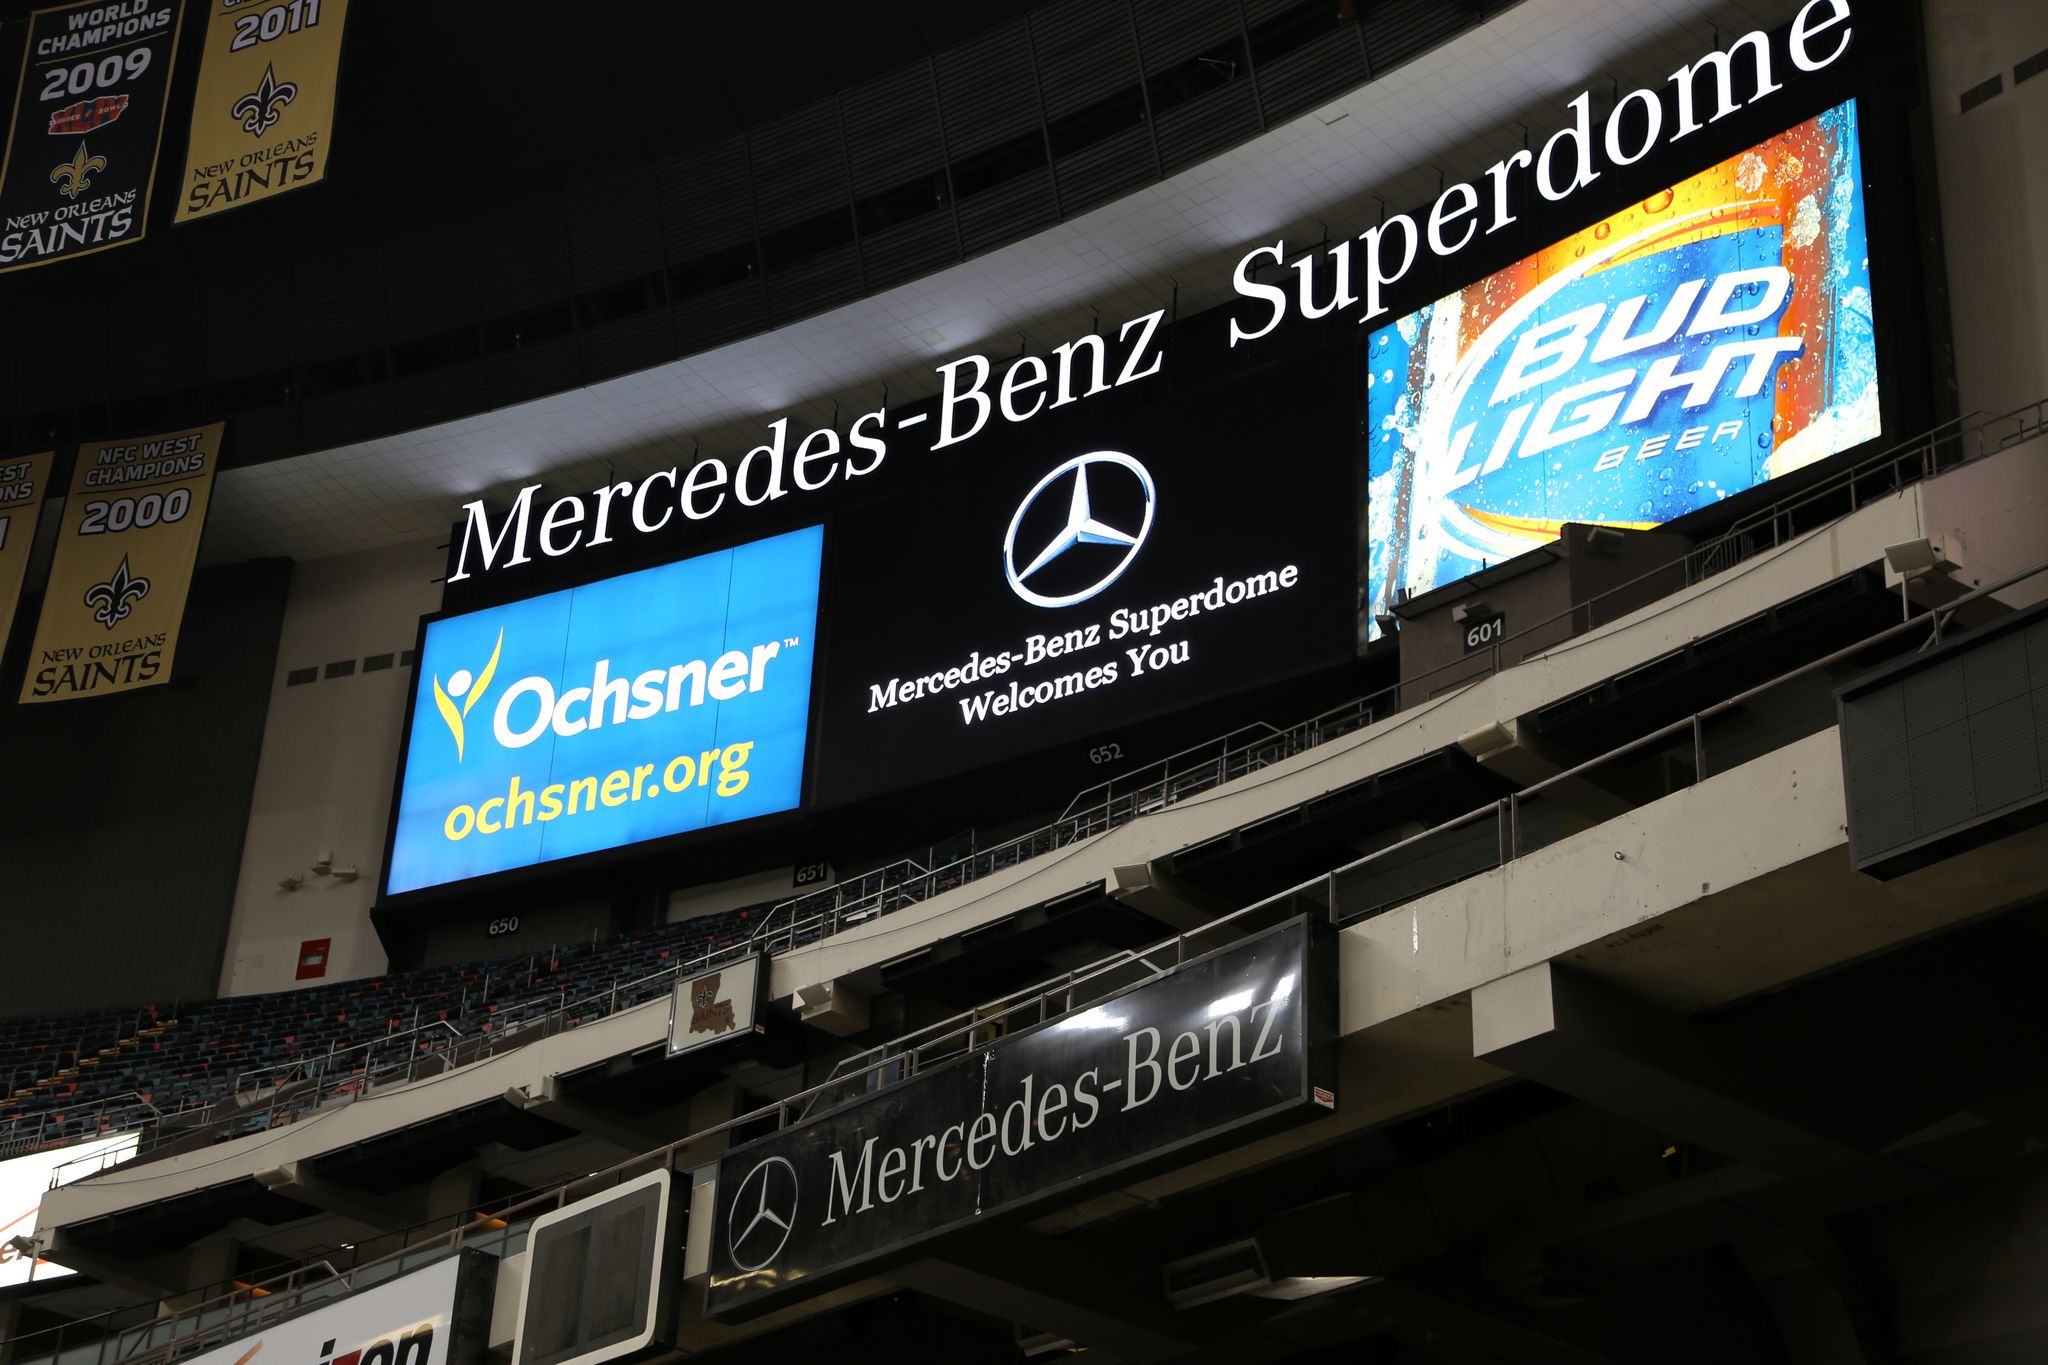 Mercedes-Benz verzichtet auf Sponsoring des Superdomes in New Orleans